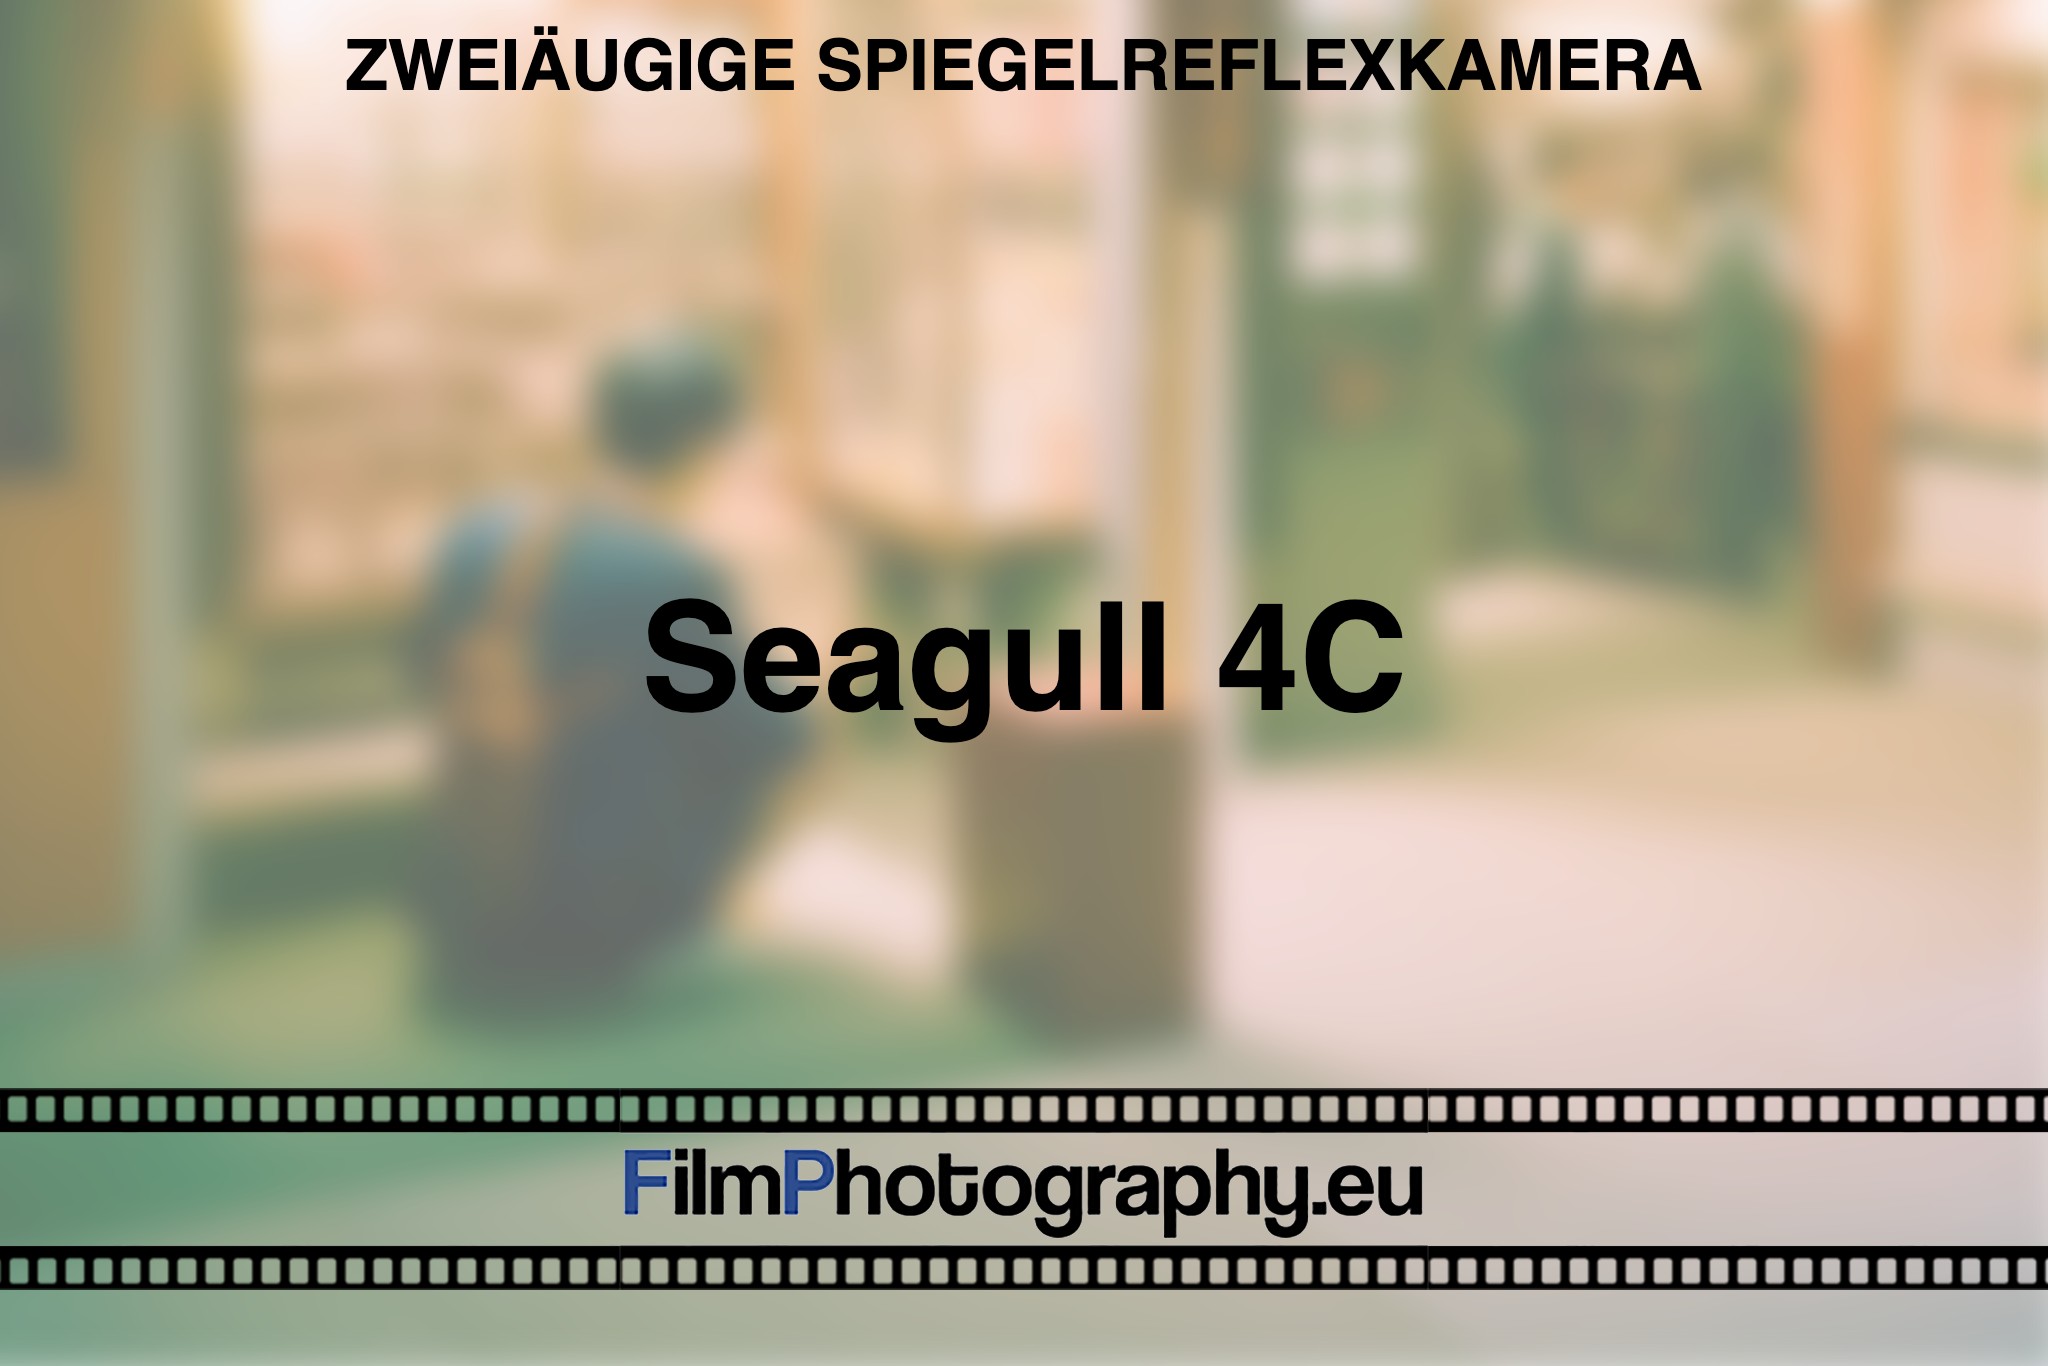 seagull-4c-zweiaeugige-spiegelreflexkamera-bnv